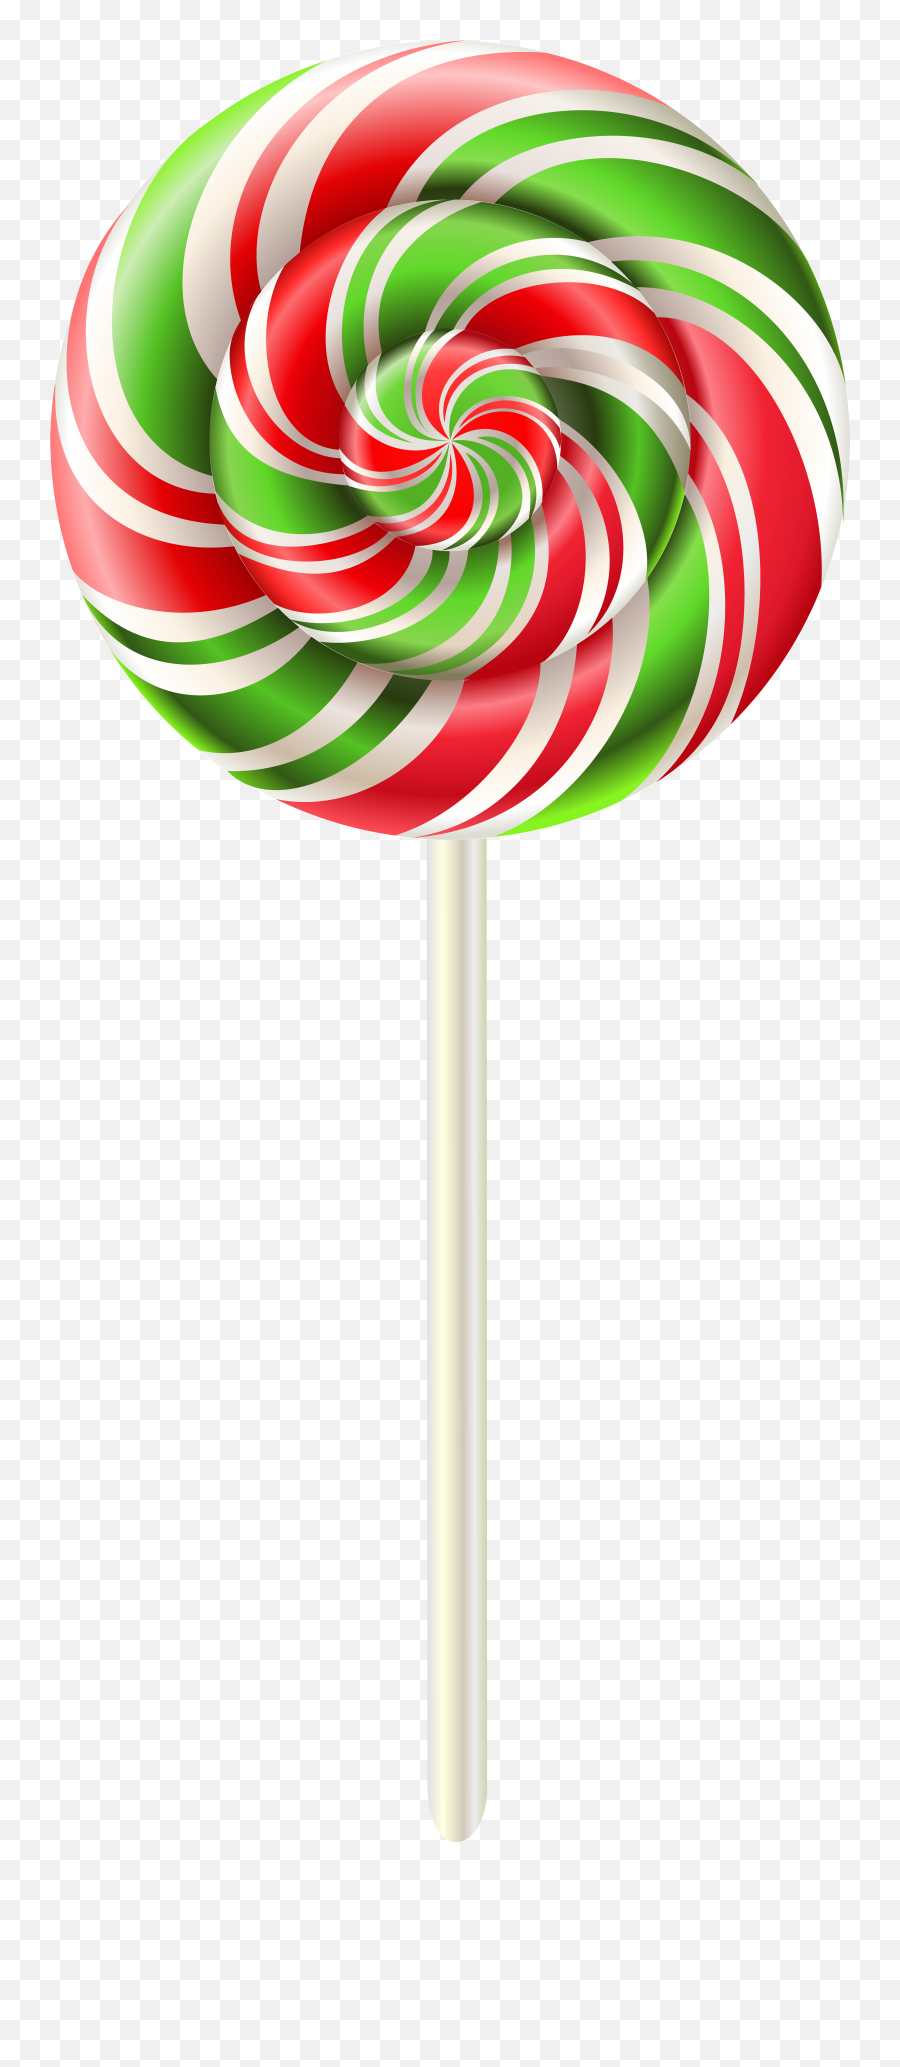 Lollipop Clip Art - Transparent Transparent Background Lollipop Clipart Emoji,Lollipop Clipart